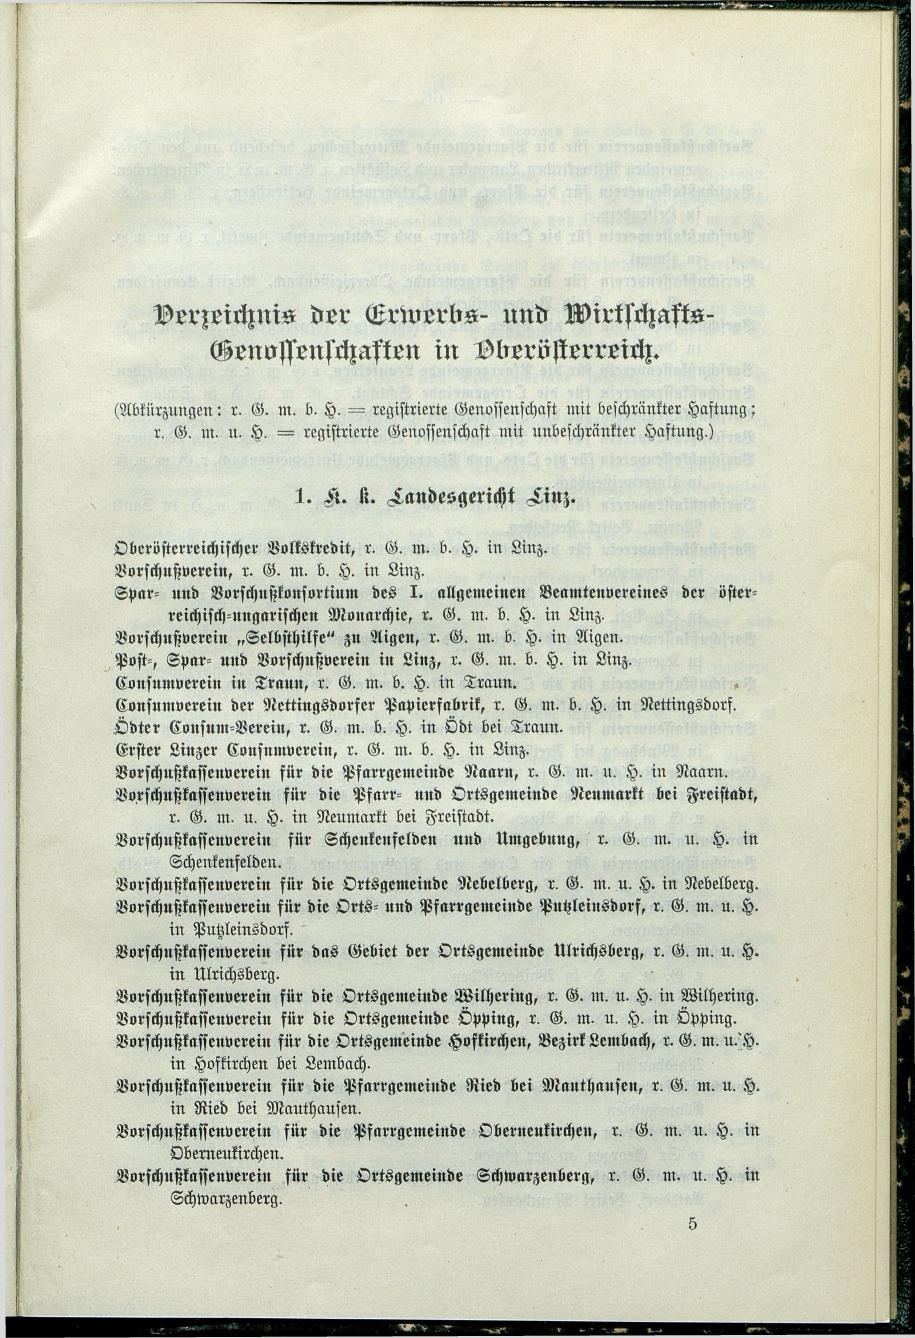 Verzeichnis der protokollierten Firmen und Genossenschaften in Oberösterreich 1908 - Page 69